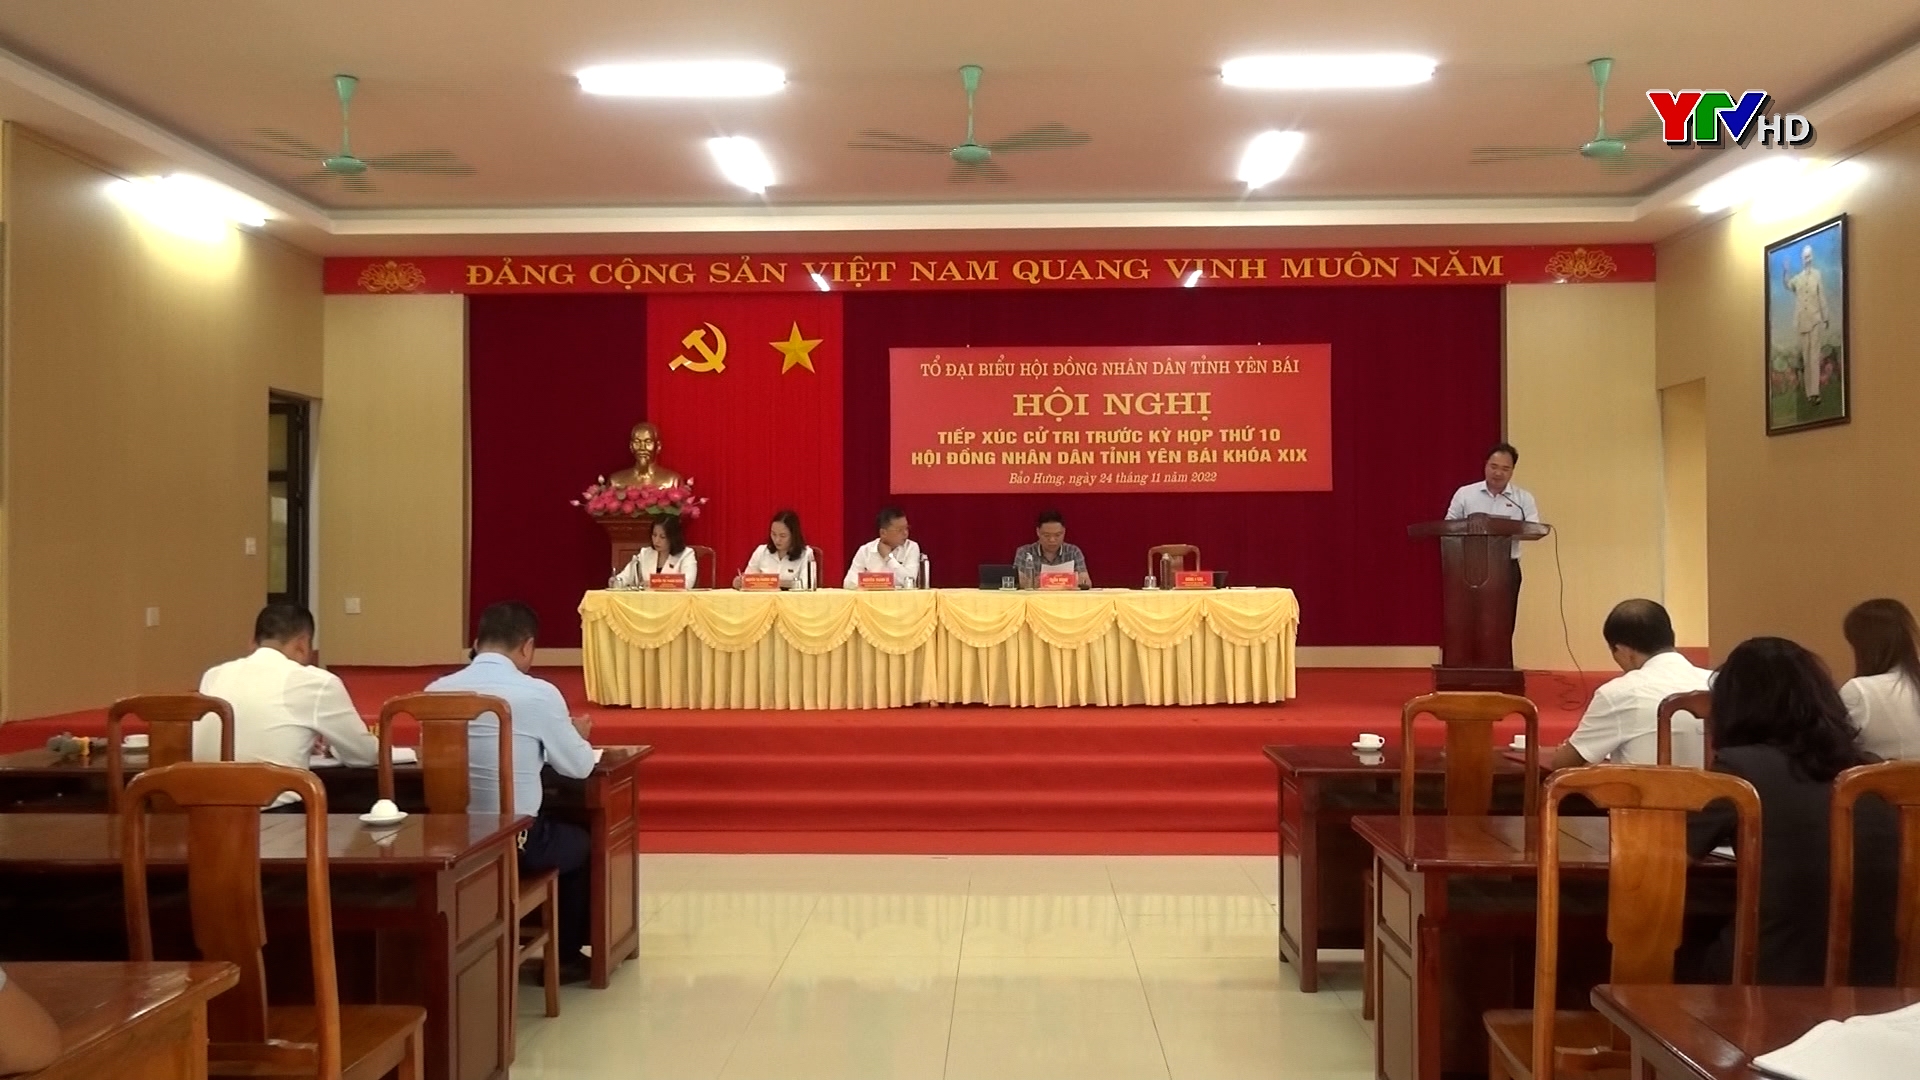 Tổ đại biểu HĐND 3 cấp tiếp xúc cử tri xã Bảo Hưng và Minh Quân, huyện Trấn Yên